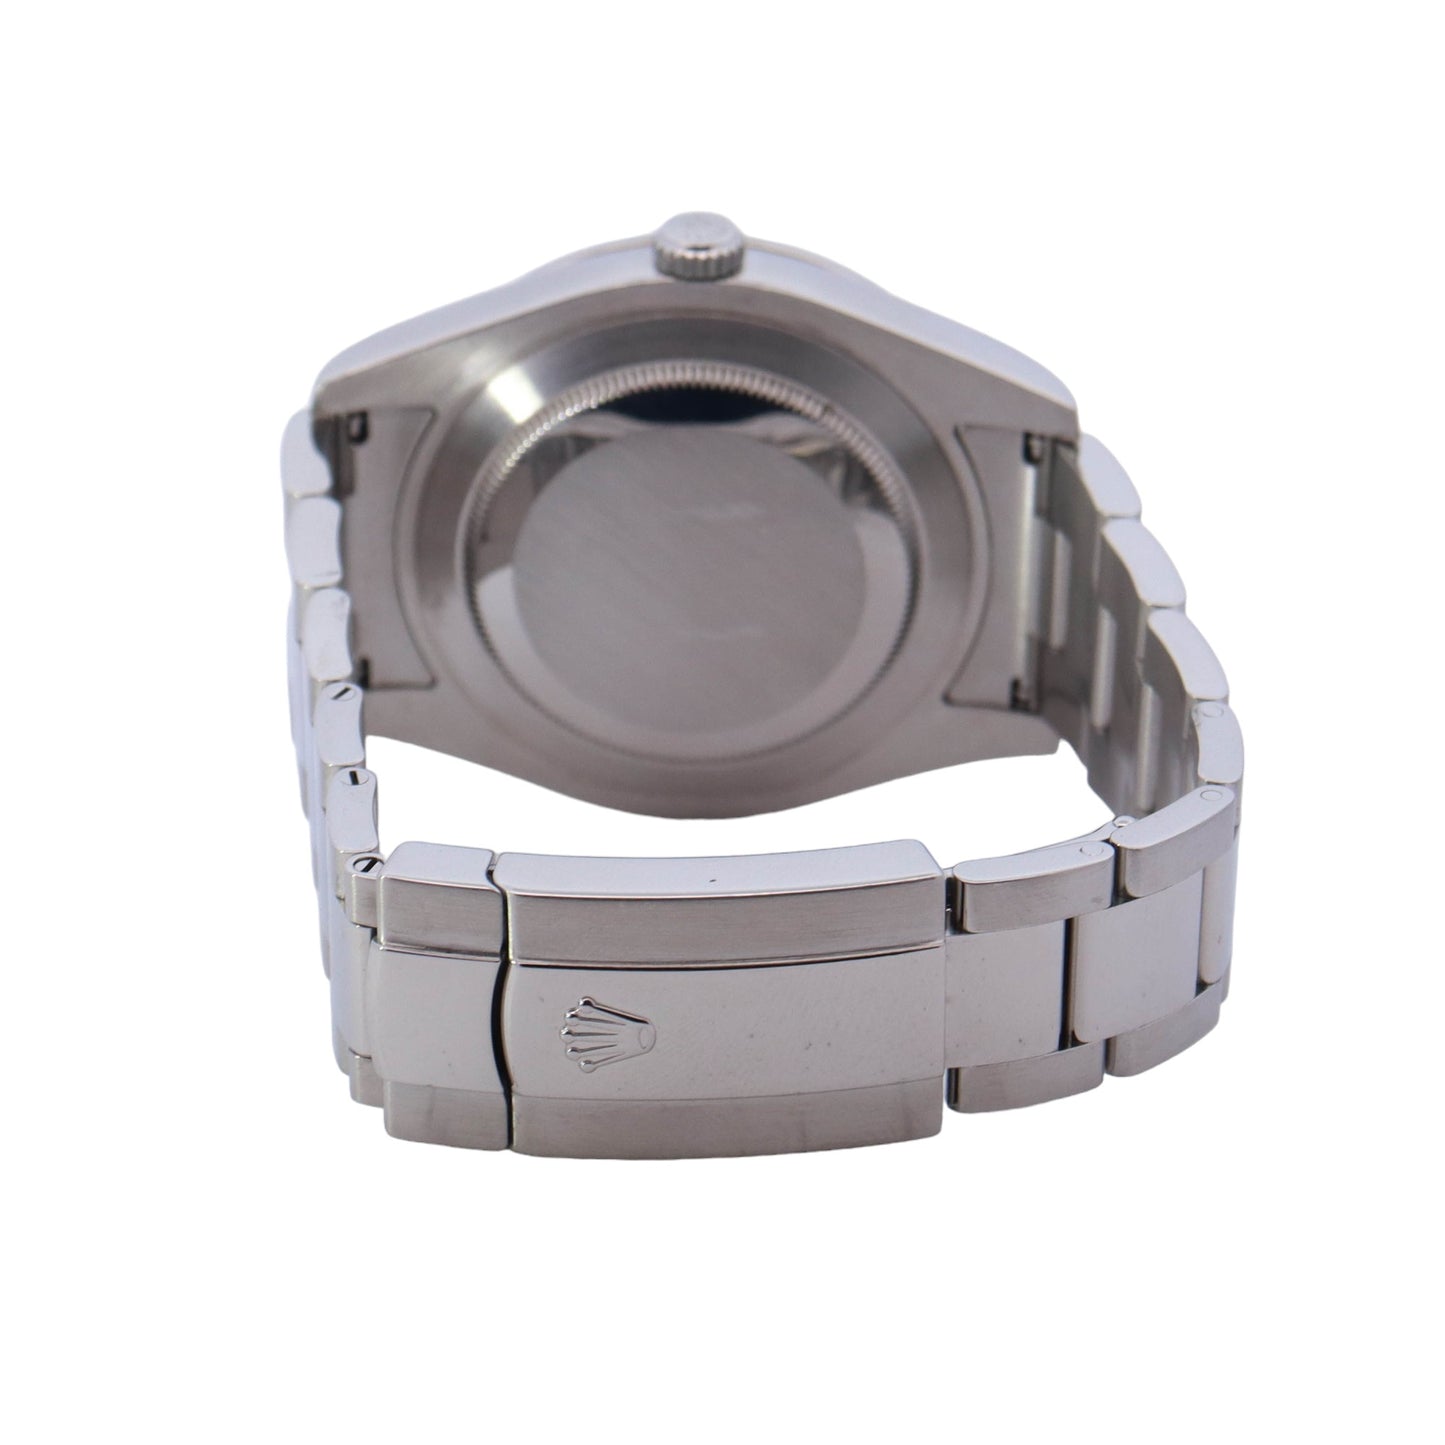 Rolex Datejust Stainless Steel 41mm Grey Diamond Dot Dial Watch  Reference #: 116300 - Happy Jewelers Fine Jewelry Lifetime Warranty